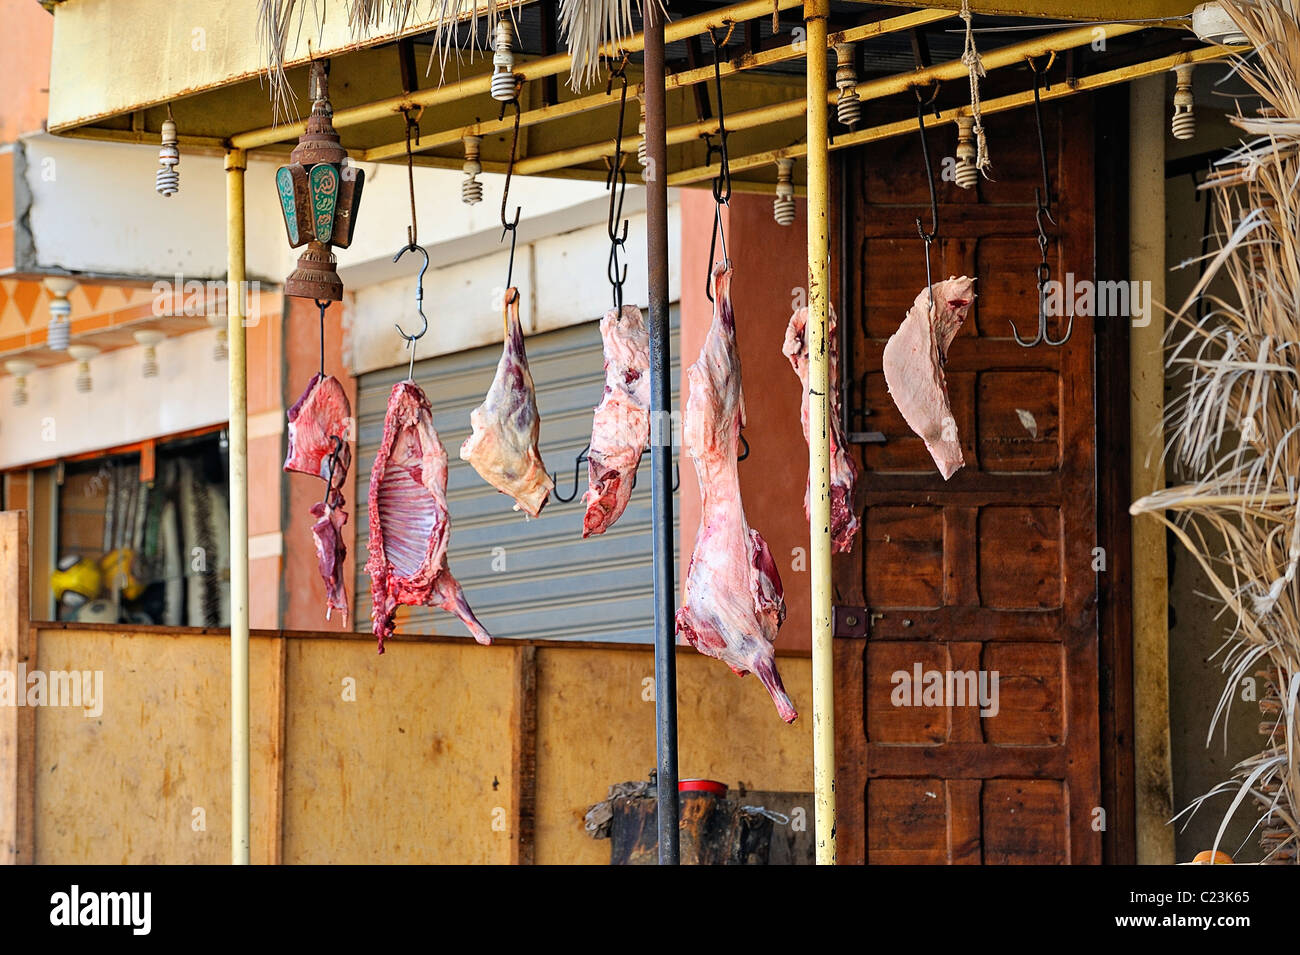 Morceaux de viande suspendus à des crochets de boucher de la ville de Siwa, désert de l'ouest, l'Egypte Banque D'Images